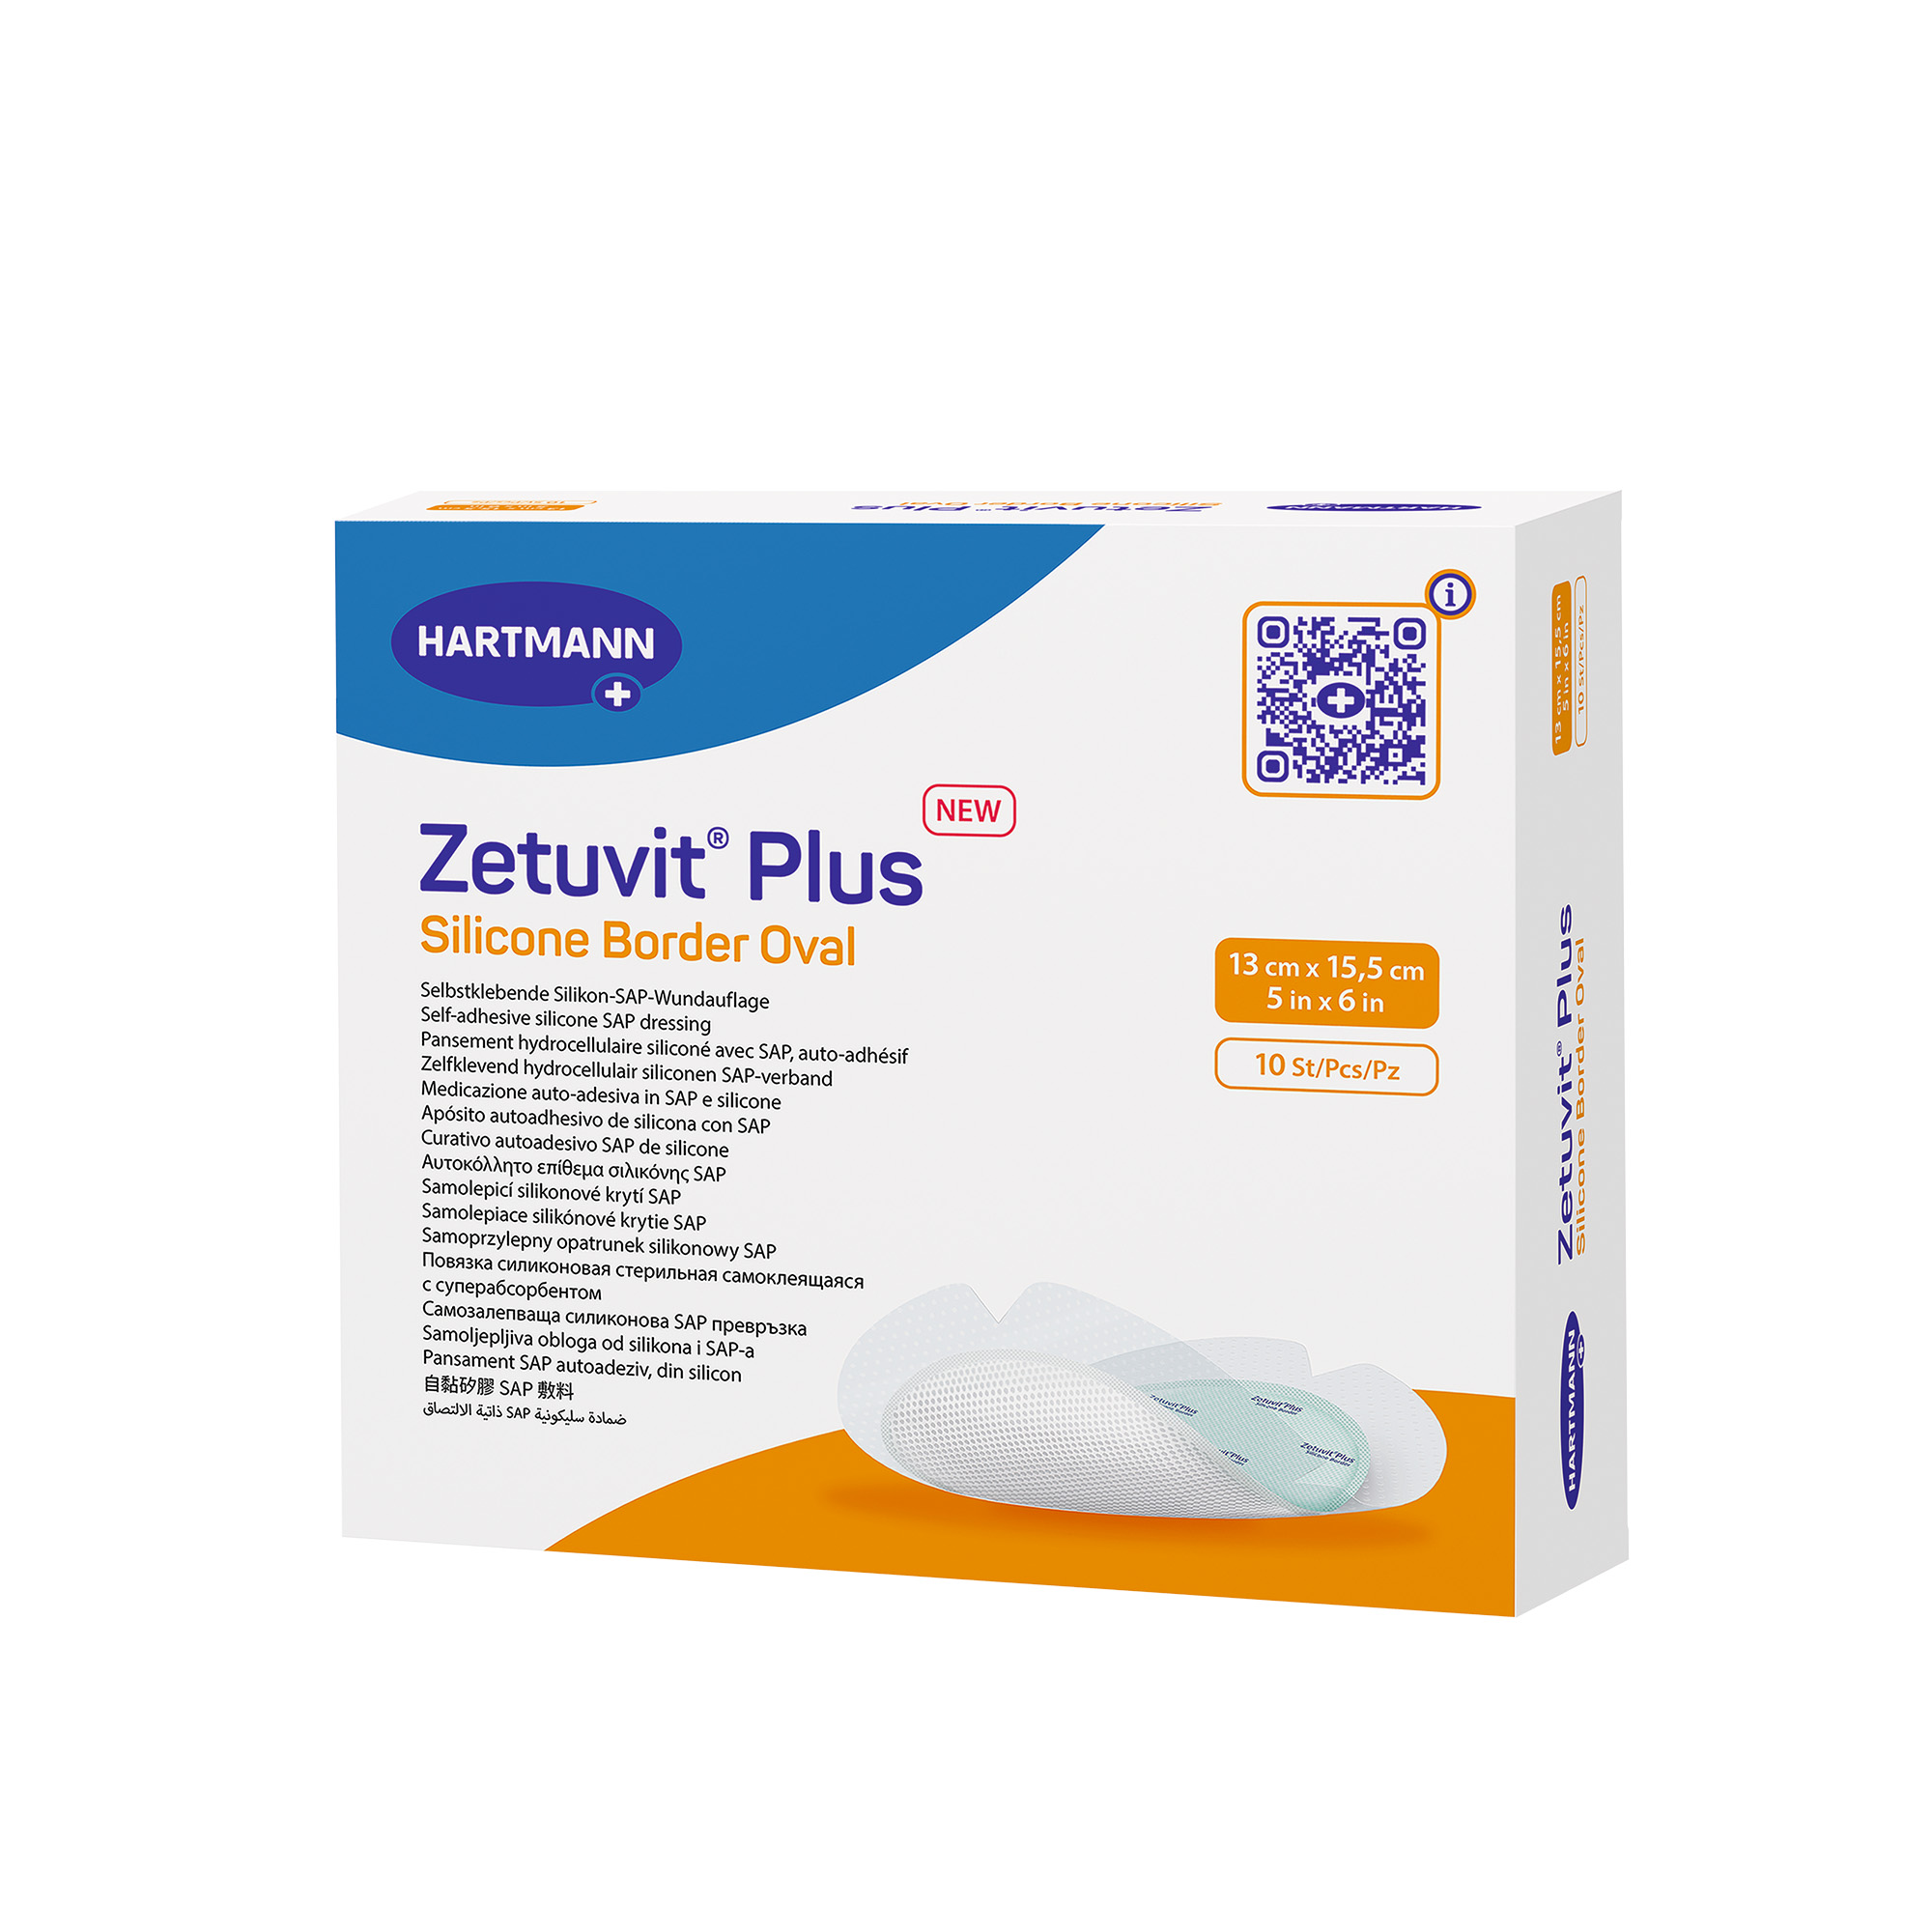 Hartmann Zetuvit® Plus Silicone Border 13 x 15 cm Oval, sterile, individually